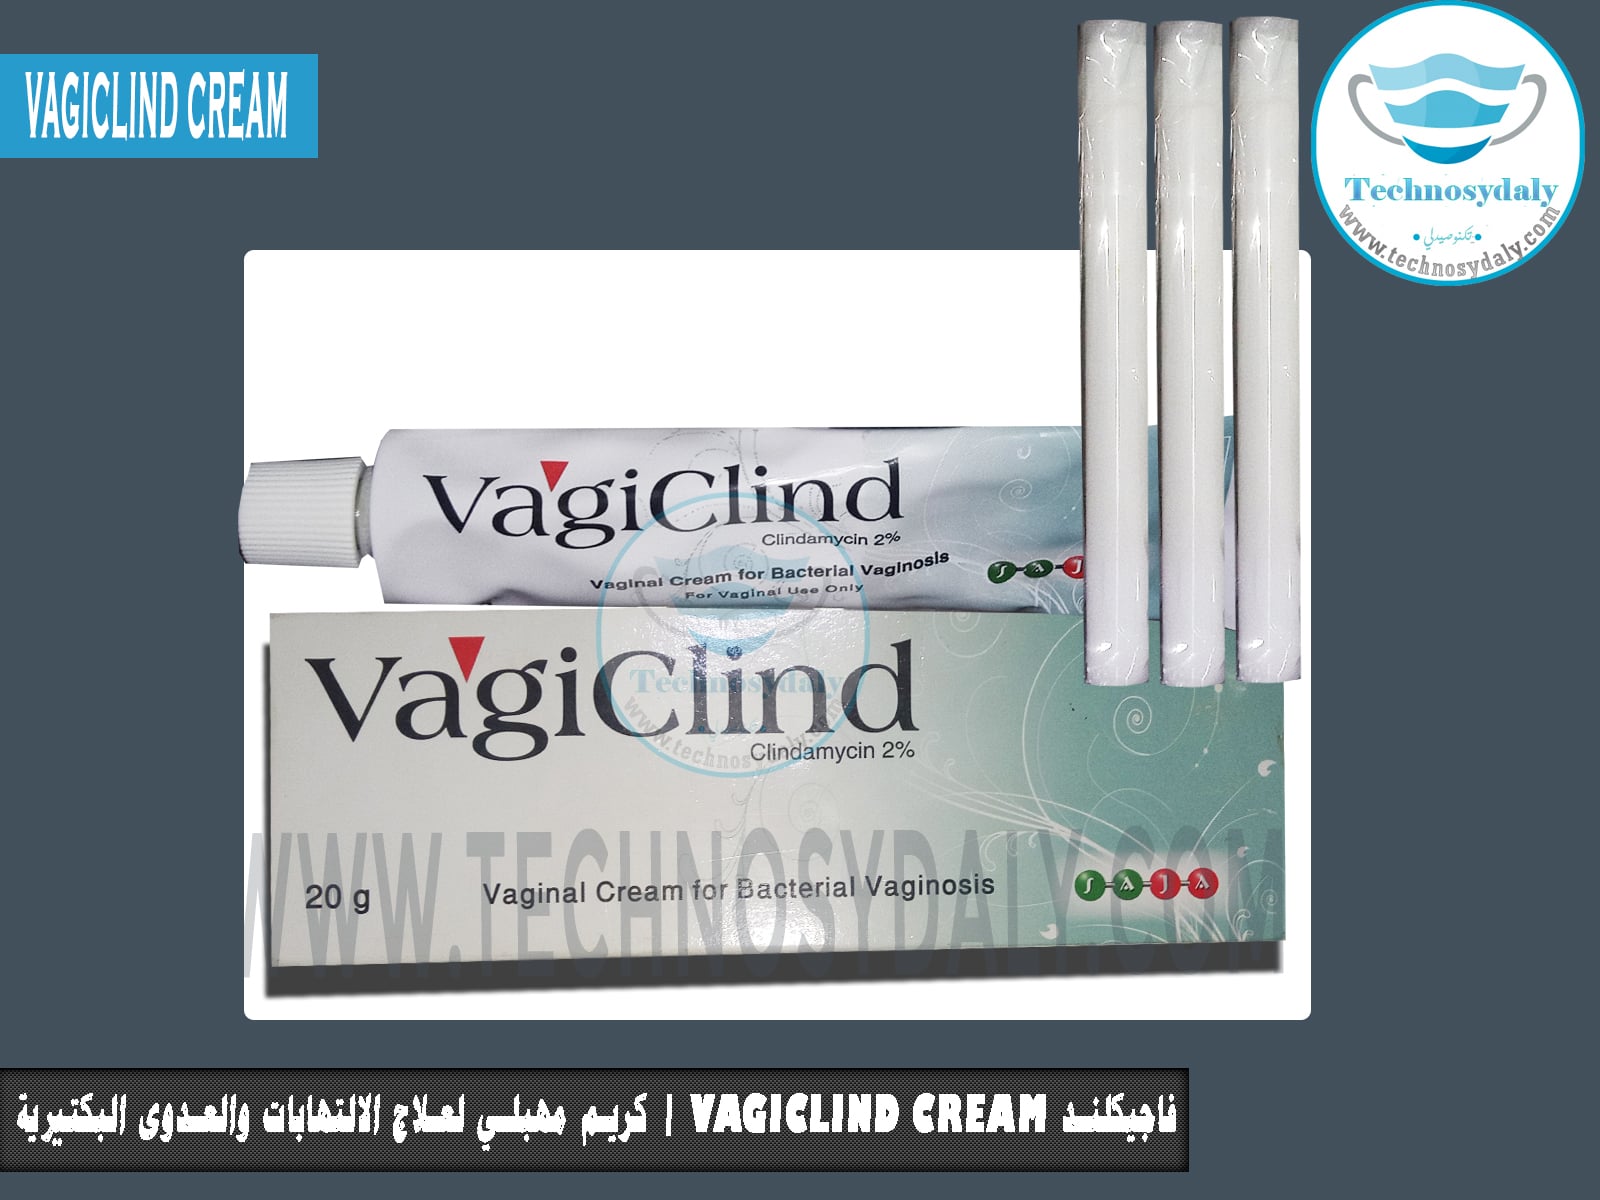 فاجيكلند Vagiclind Cream كريم مهبلي لعلاج الالتهابات